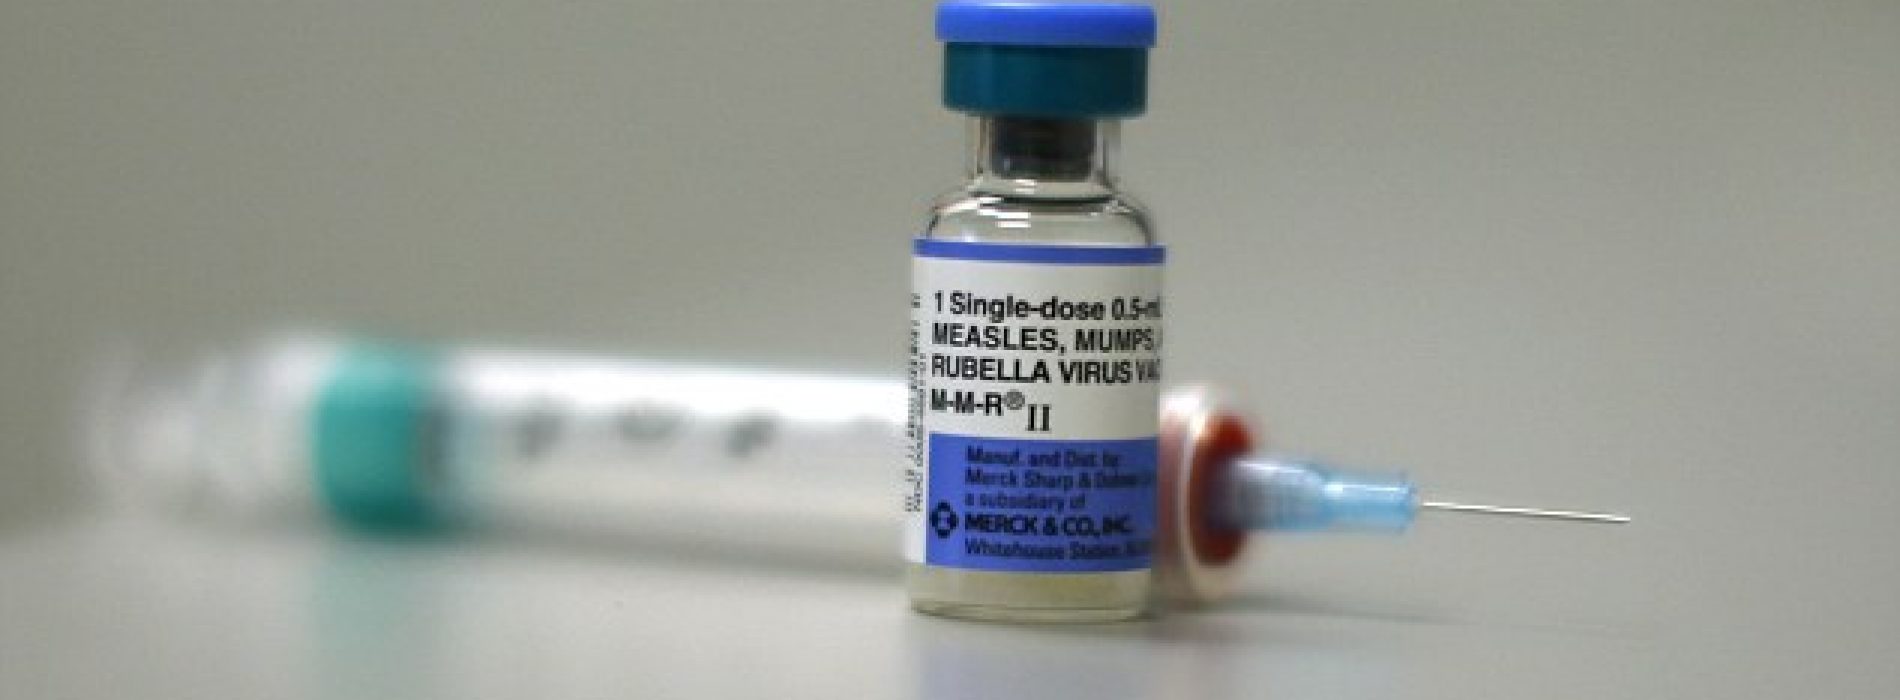 Amerikaanse vrouw die stierf aan mazelen was als kind gevaccineerd